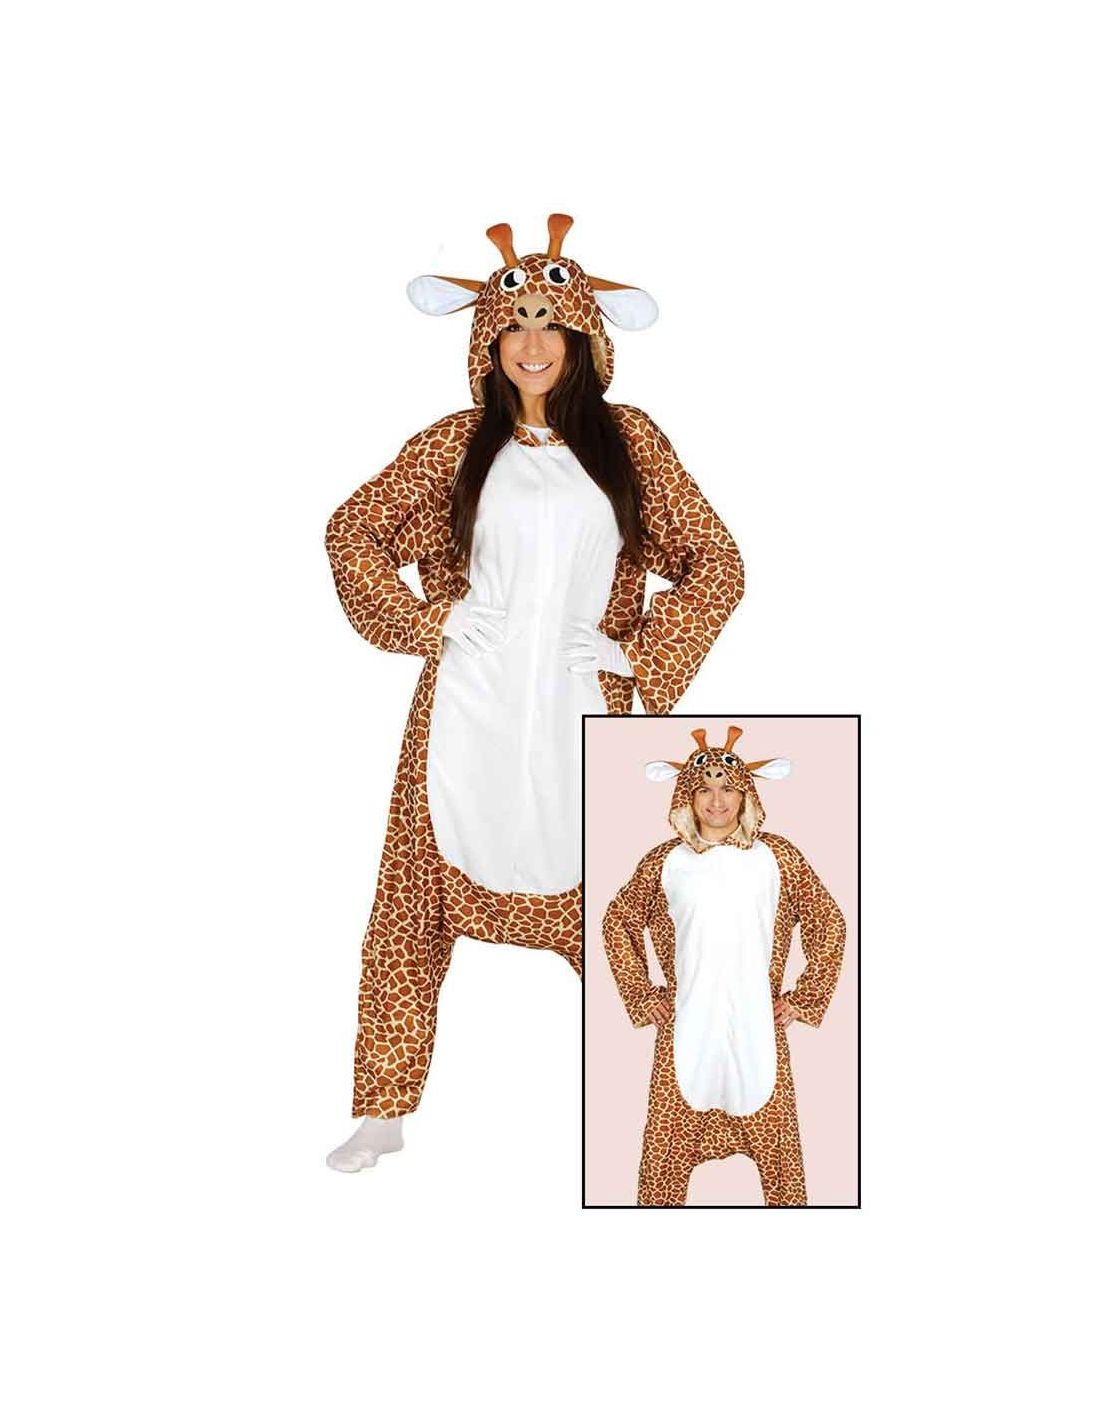 Disfraz inflable de cocodrilo para Halloween para adulto unisex